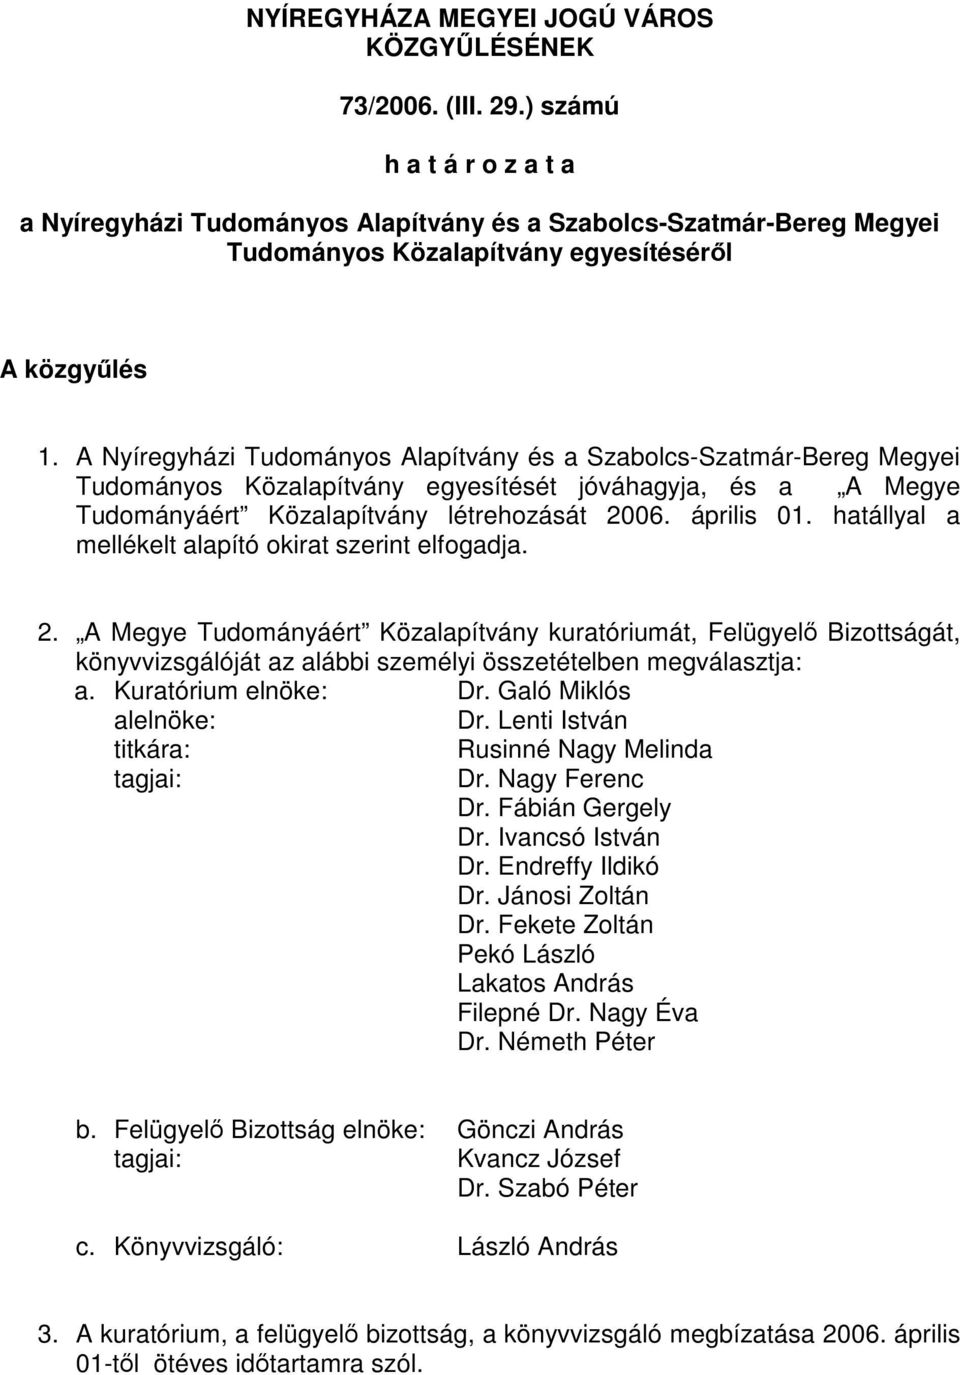 A Nyíregyházi Tudományos Alapítvány és a Szabolcs-Szatmár-Bereg Megyei Tudományos Közalapítvány egyesítését jóváhagyja, és a A Megye Tudományáért Közalapítvány létrehozását 2006. április 01.